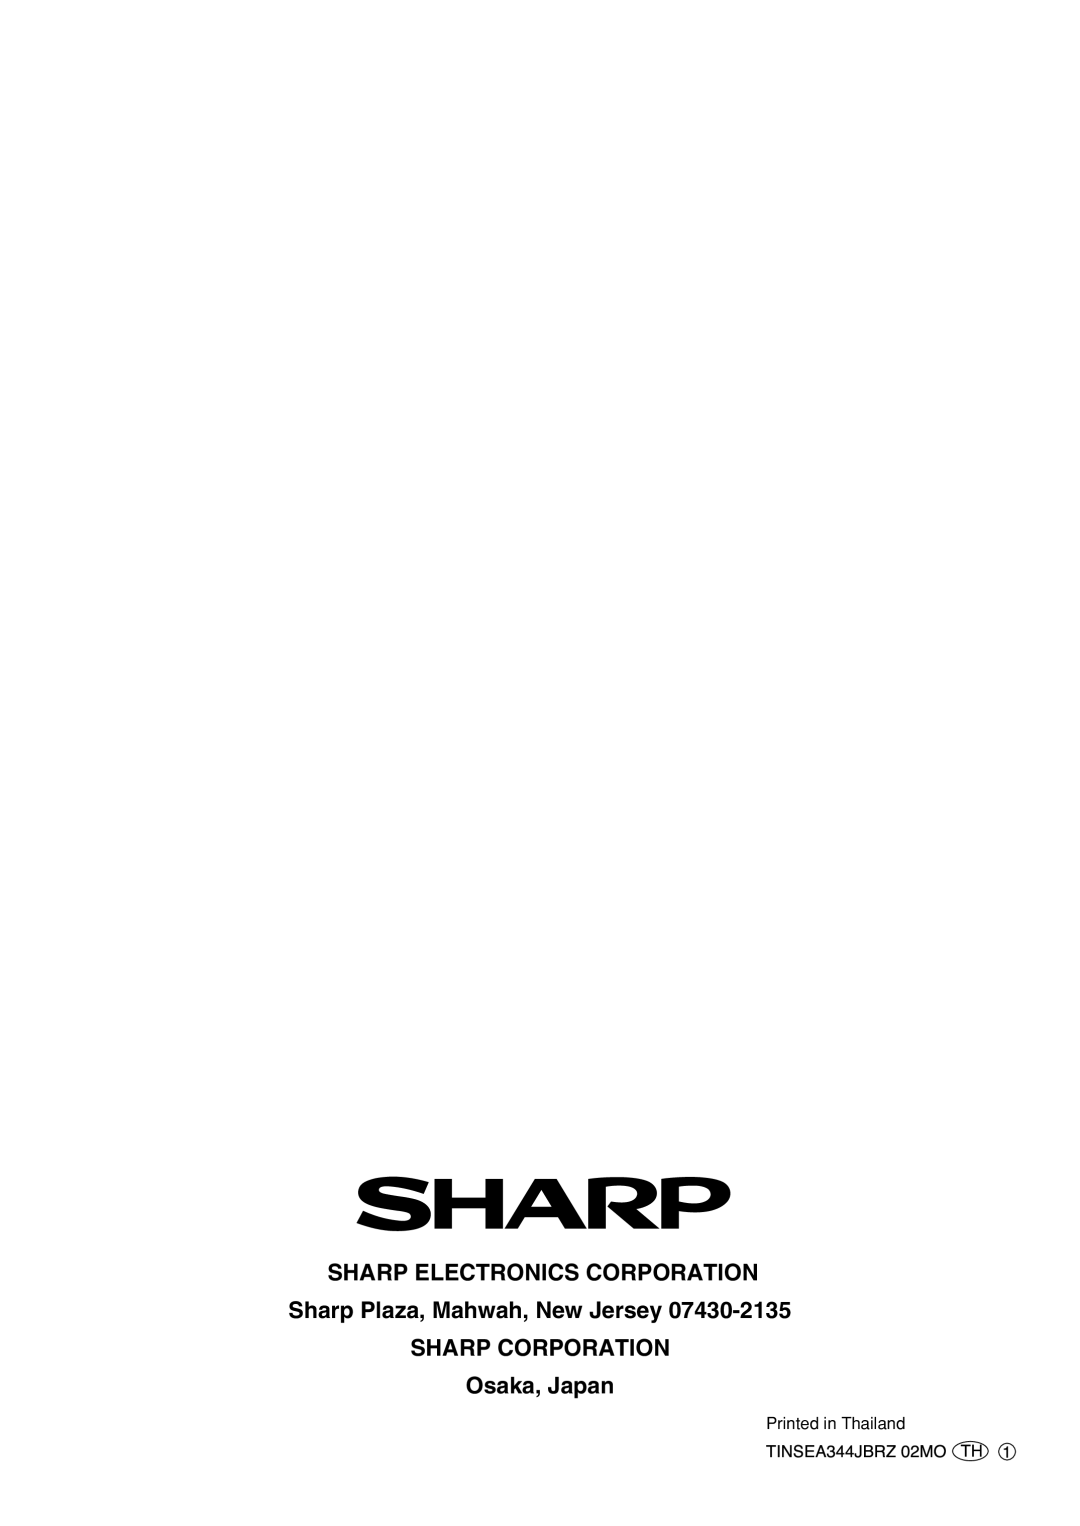 Sharp AF-S100DX, AF-S120DX, AF-R120DX PrintedTINSEA344JBRZin Thailand02MOTH1, Sharp Electronics Corporation, Osaka, Japan 